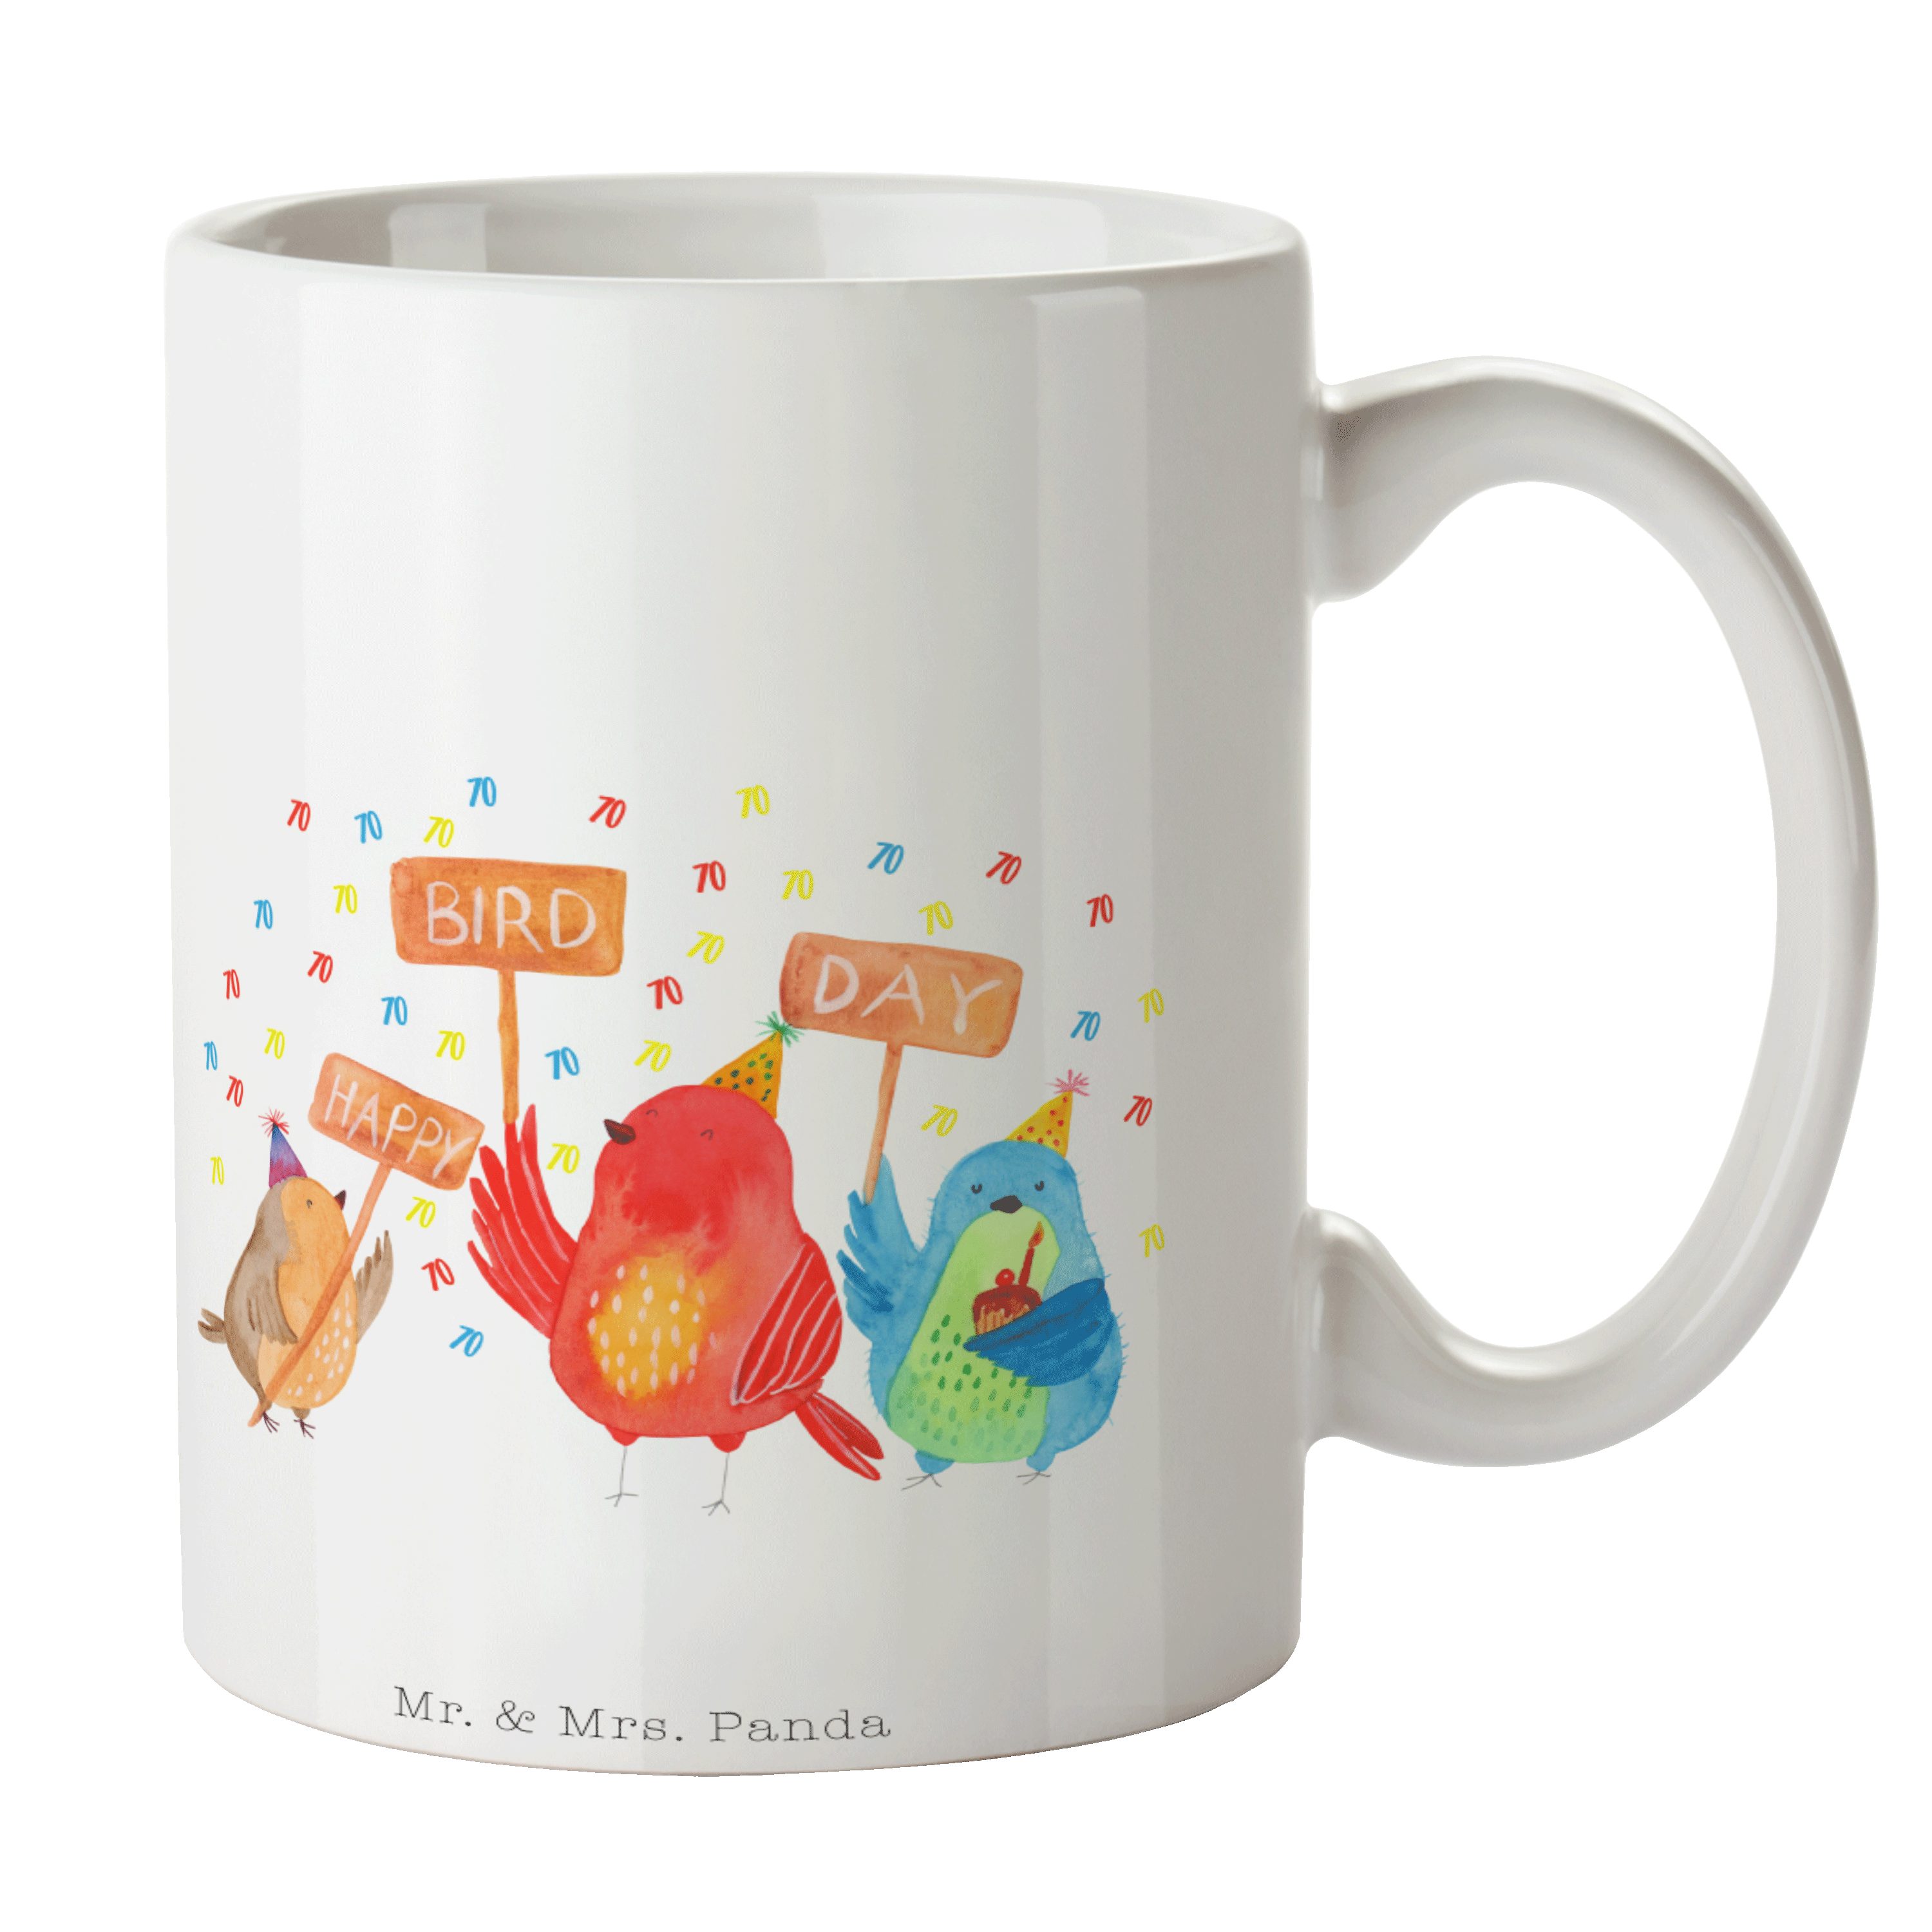 Bird Geburtstag - Weiß Geschenk Geschenk, Teet, Mrs. Panda Happy Mr. Day Keramik 70. & - Tasse Tasse,